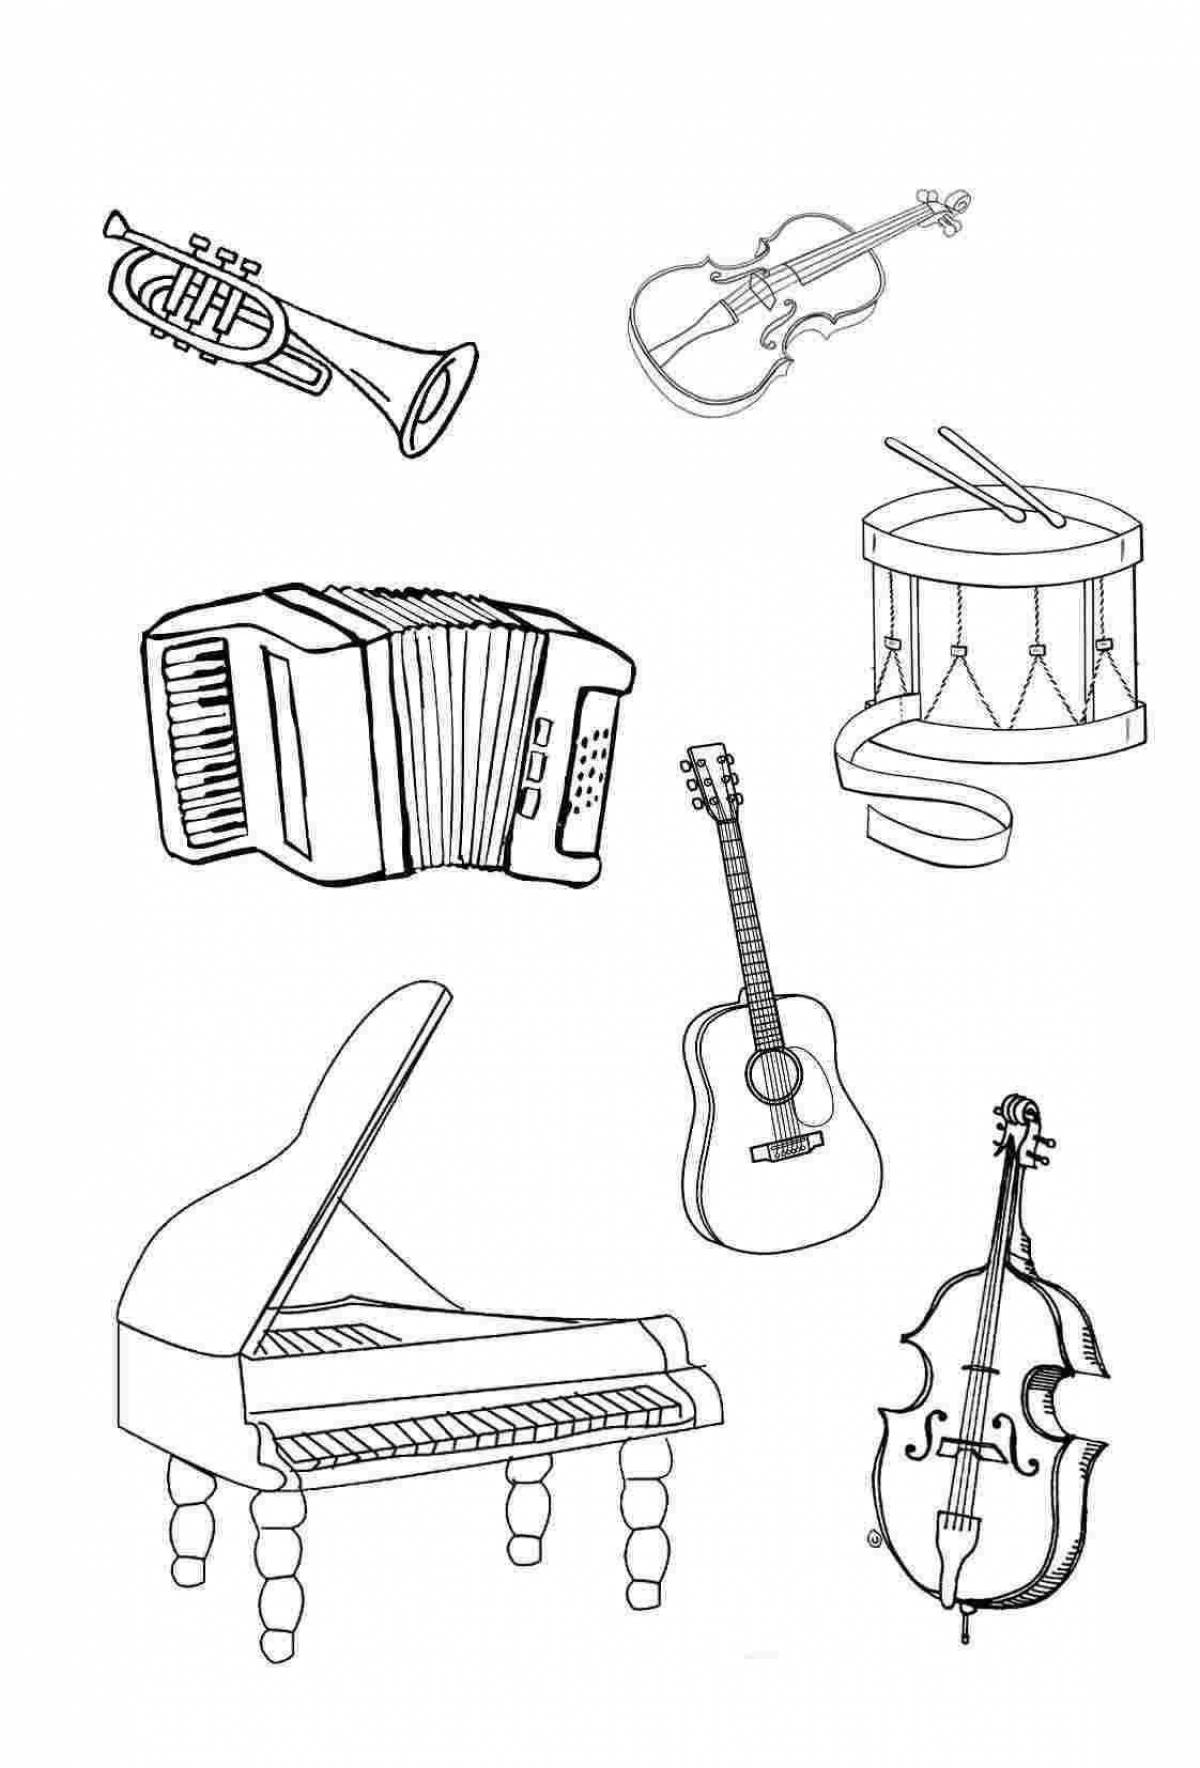 Учим музыкальные инструменты. Музыкальные инструменты раскраска. Раскраска музыкальные инструменты для детей. Музыкальные инструменты рисунки. Музыкальные Инстурмен ыраскарка.